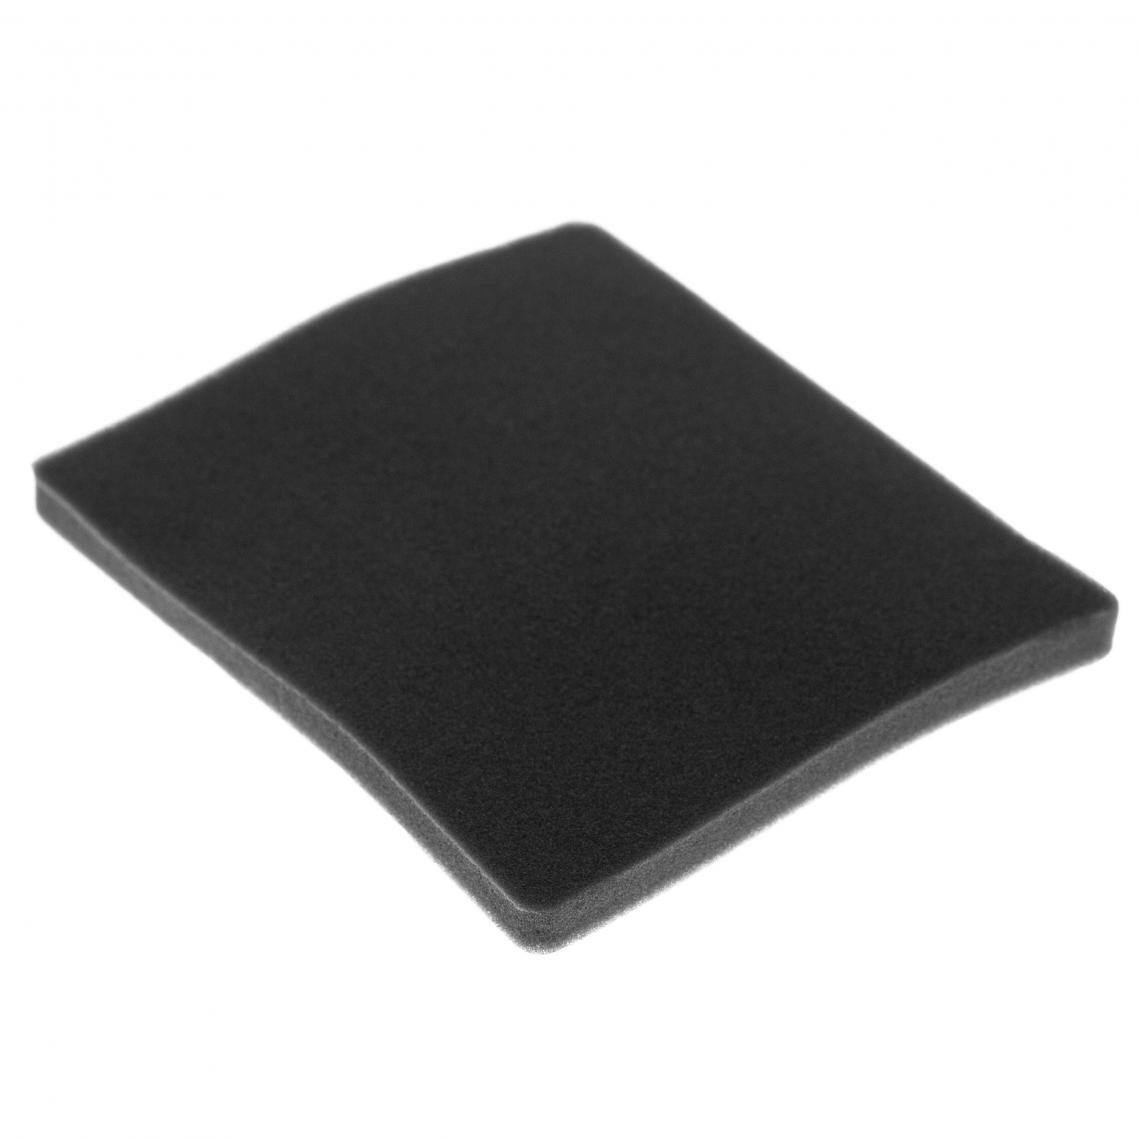 Vhbw - vhbw Filtre compatible avec Electrolux ZCX6420 (910288779) aspirateur - filtre de sortie d'air (filtre éponge), noir - Accessoire entretien des sols